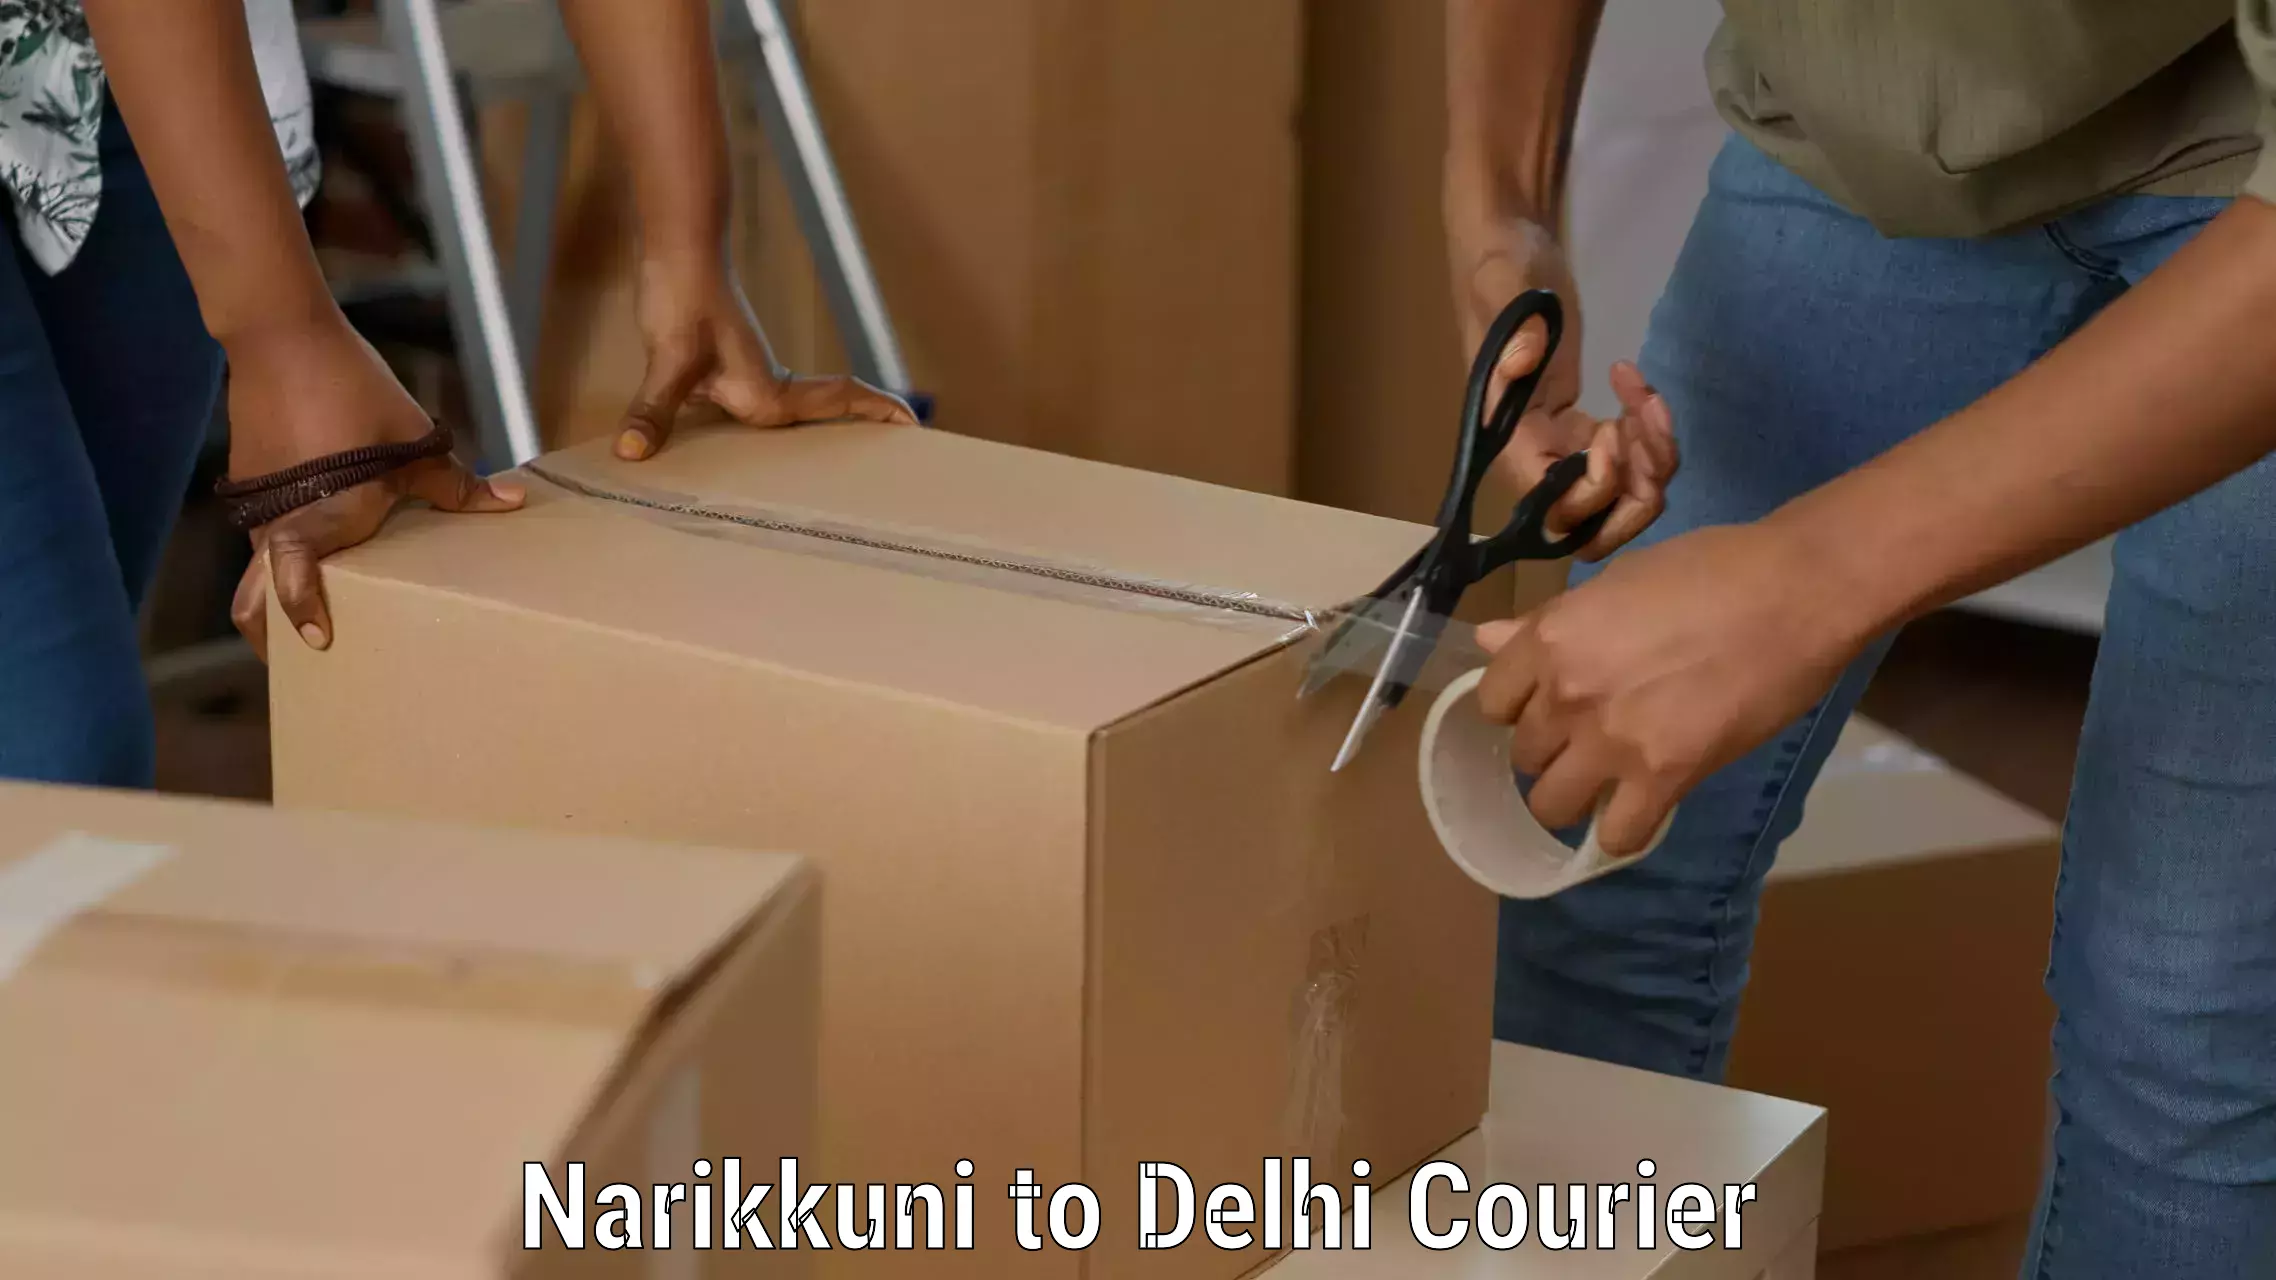 Premium courier services Narikkuni to Delhi